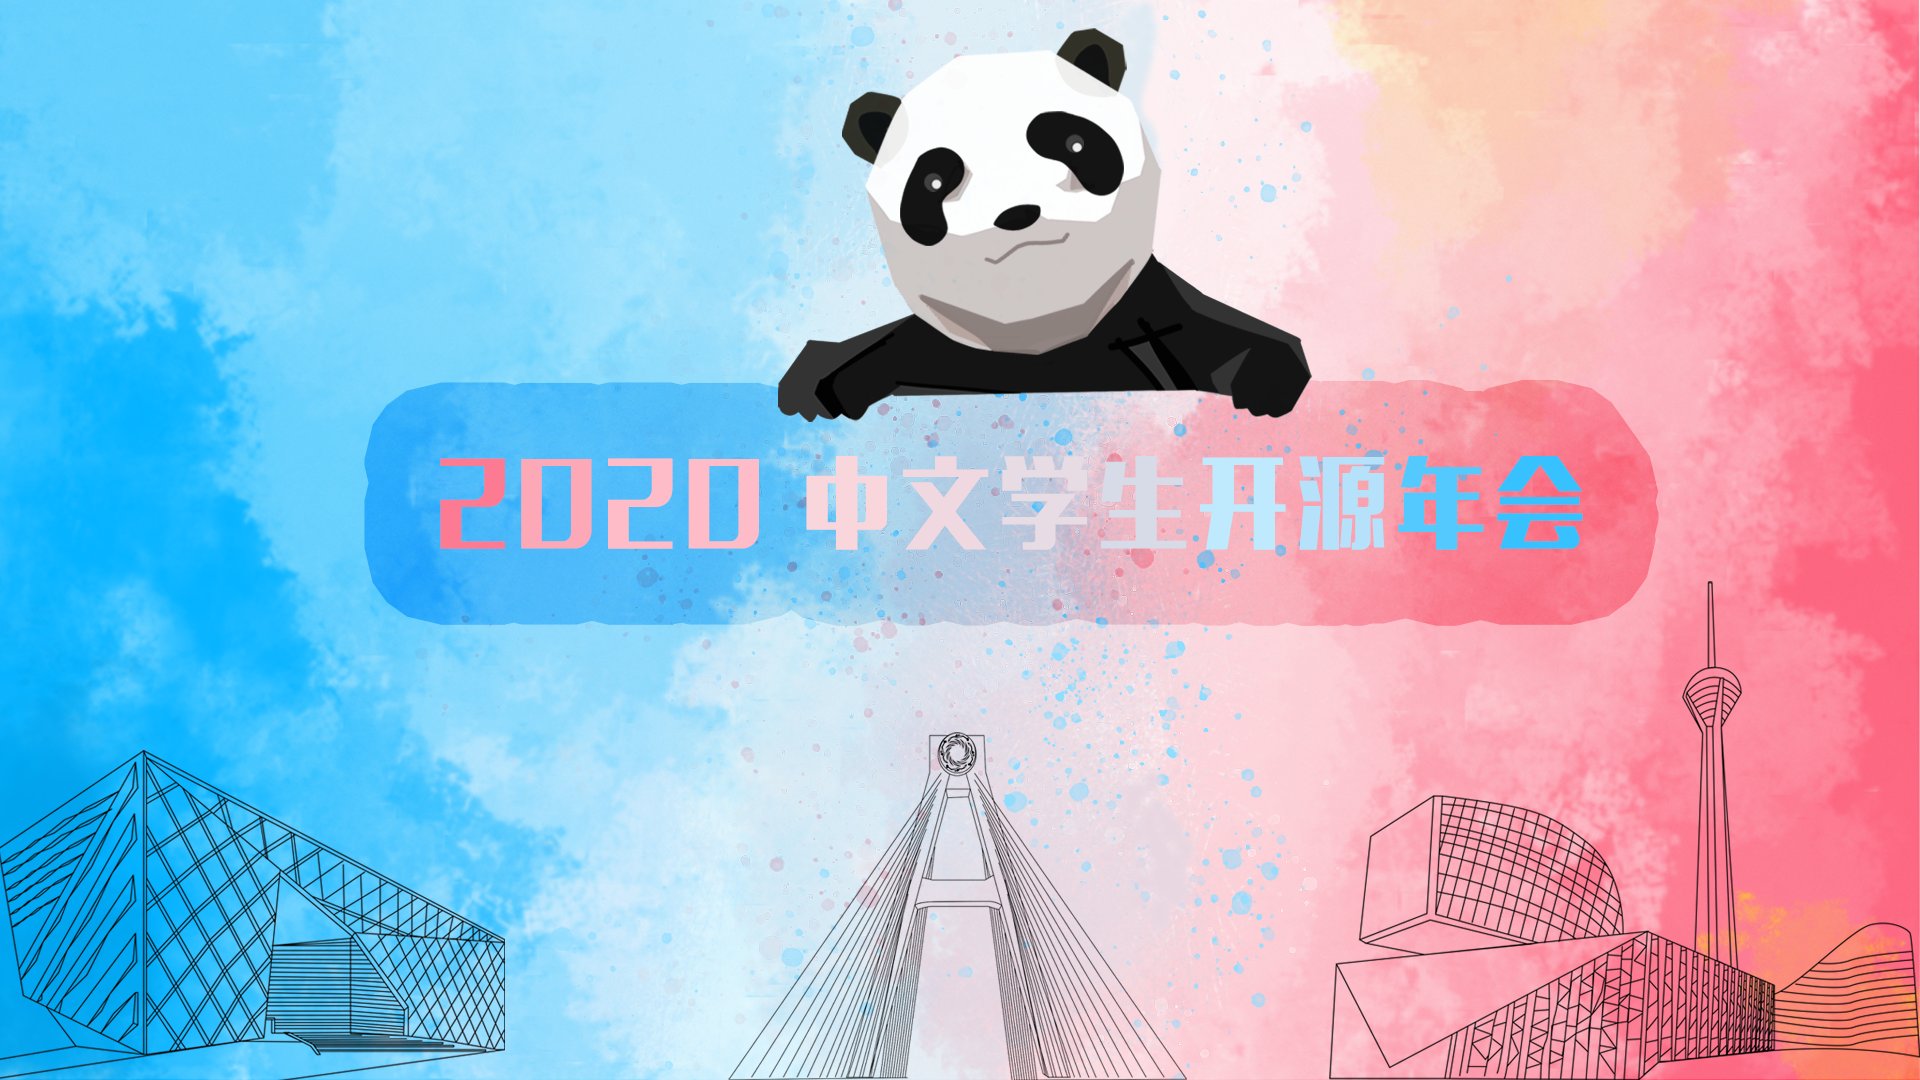 sosconf.zh 2020, 第一届中文学生开源年会